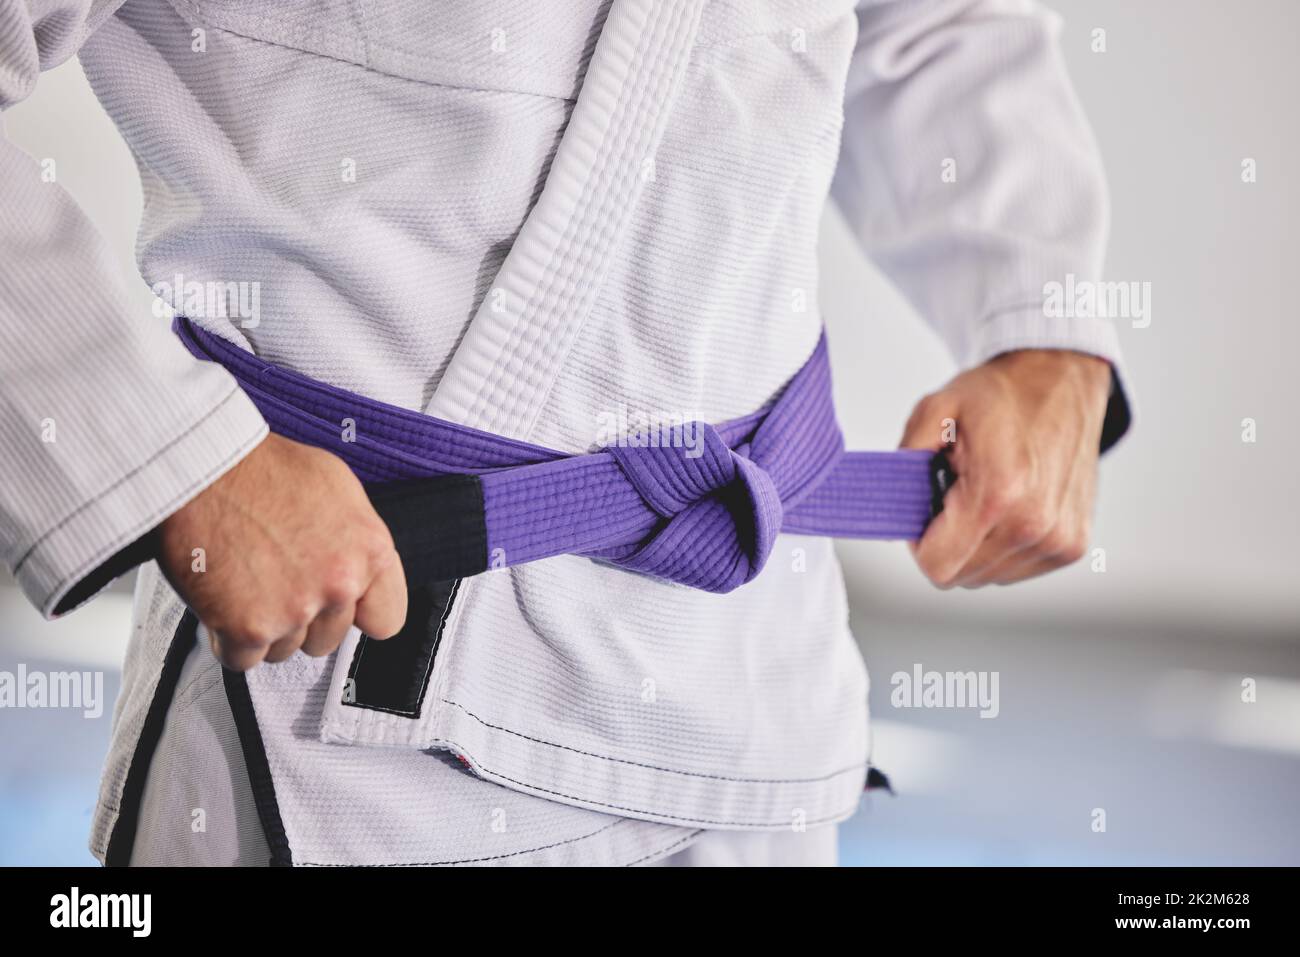 Cintura jiu jitsu immagini e fotografie stock ad alta risoluzione - Alamy